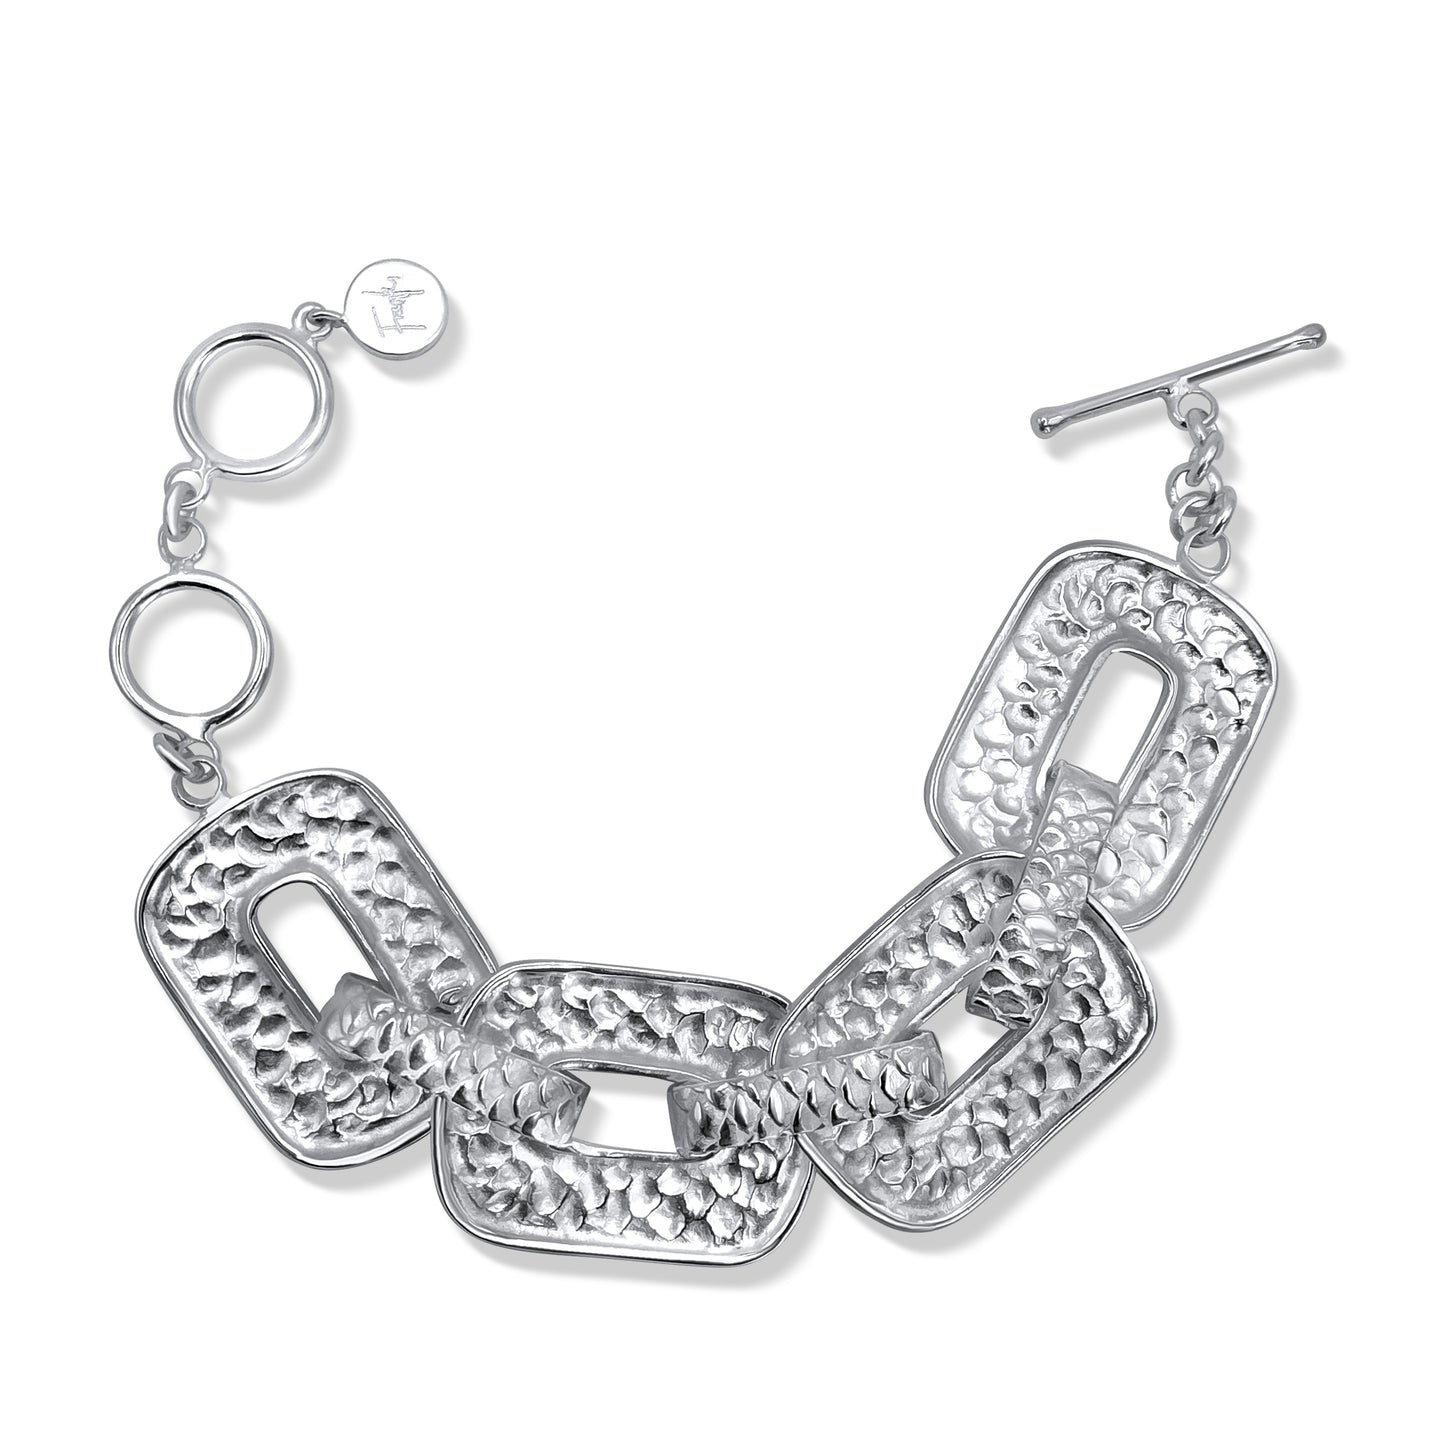 Siren Silver Buckle Chain Bracelet